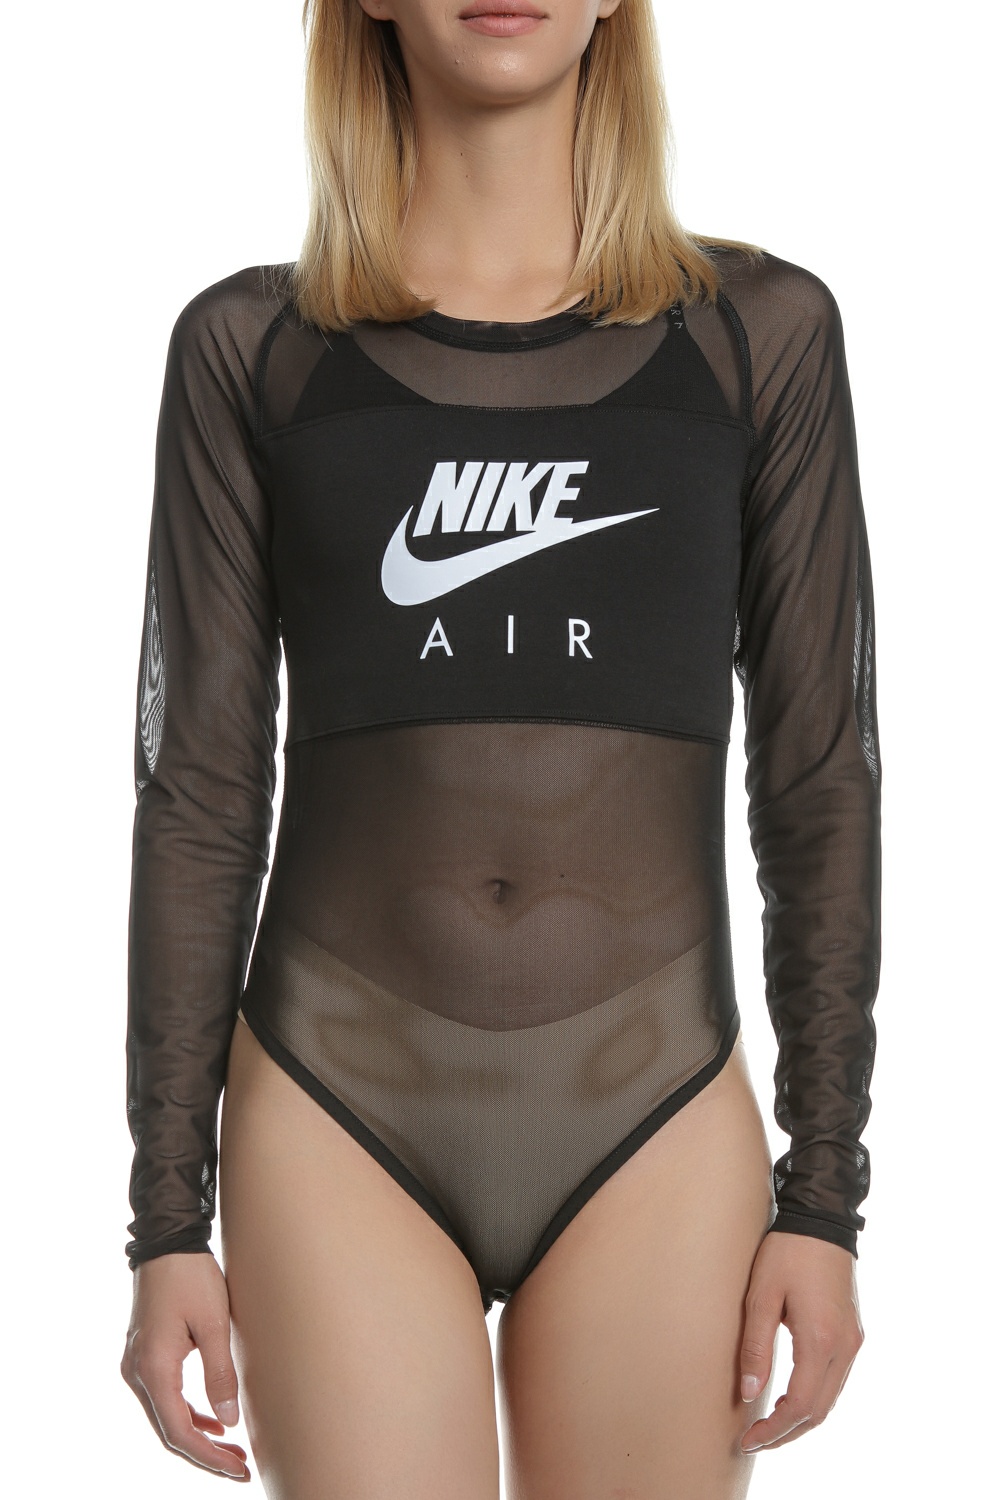 Γυναικεία/Ρούχα/Αθλητικά/T-shirt-Τοπ NIKE - Γυναικείο μακρυμάνικο κορμάκι NIKE μαύρο